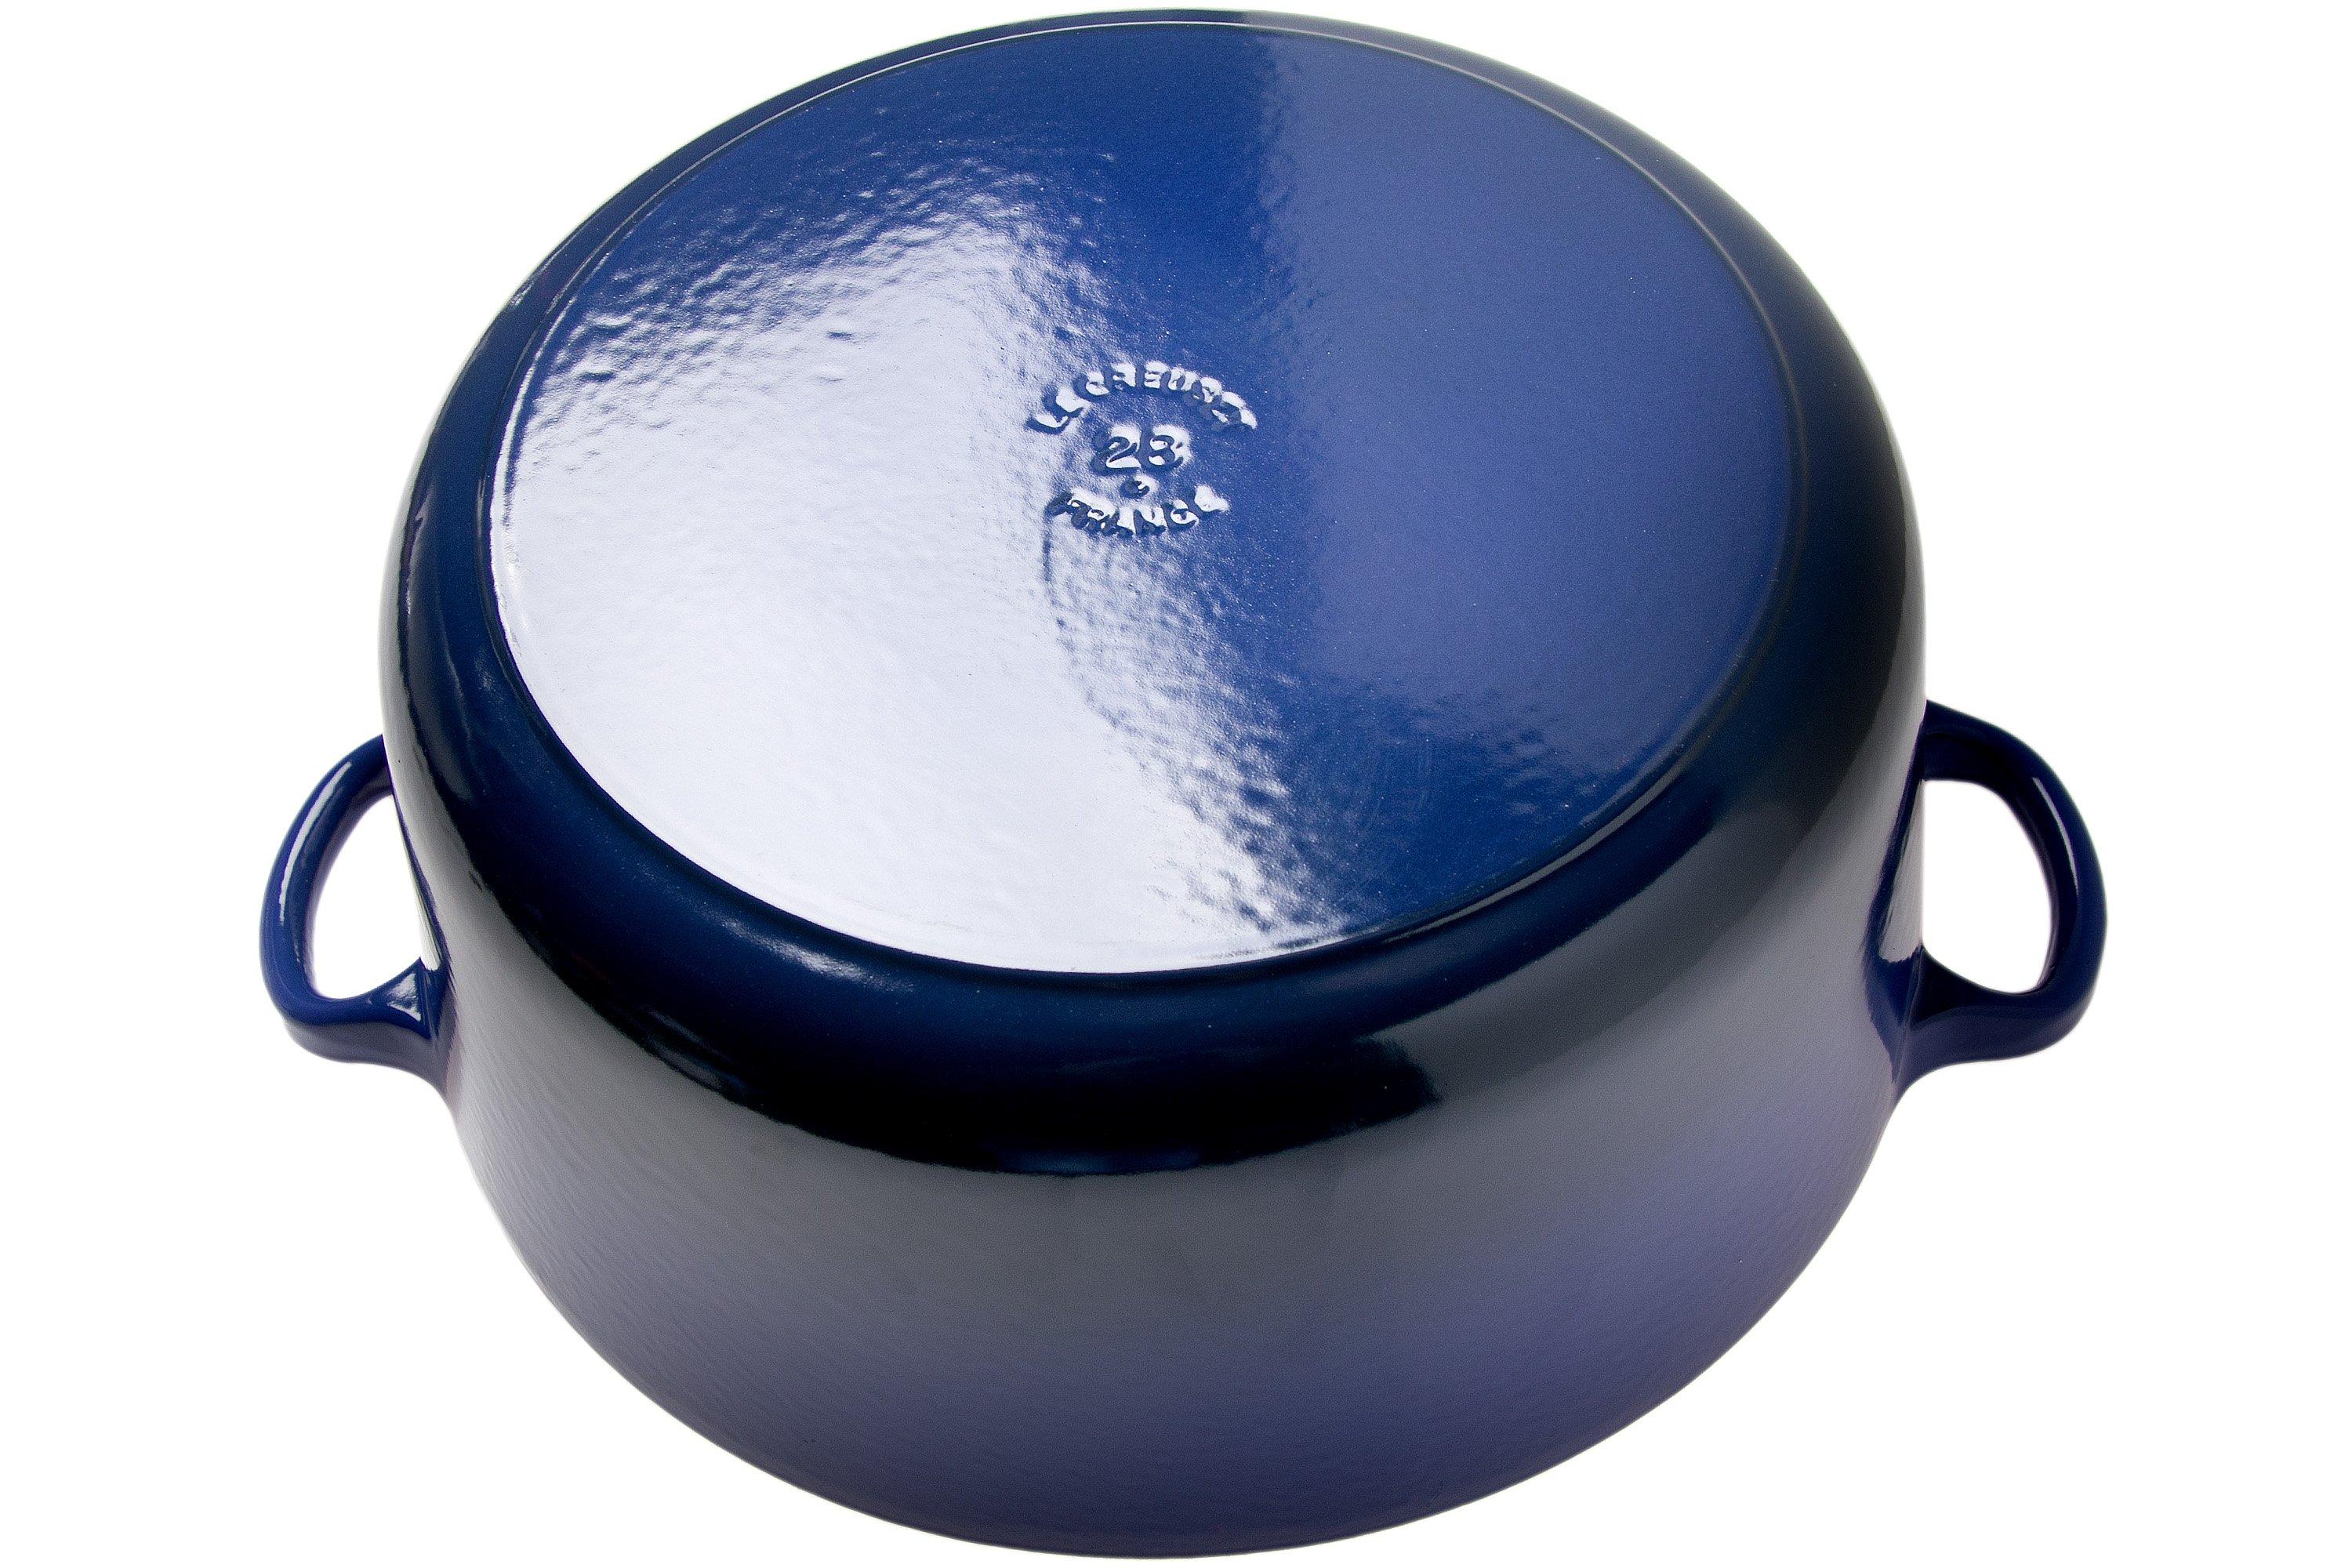 Le Creuset Tradition 25001286302461 casserole 28 cm, blue | Advantageously Knivesandtools.com